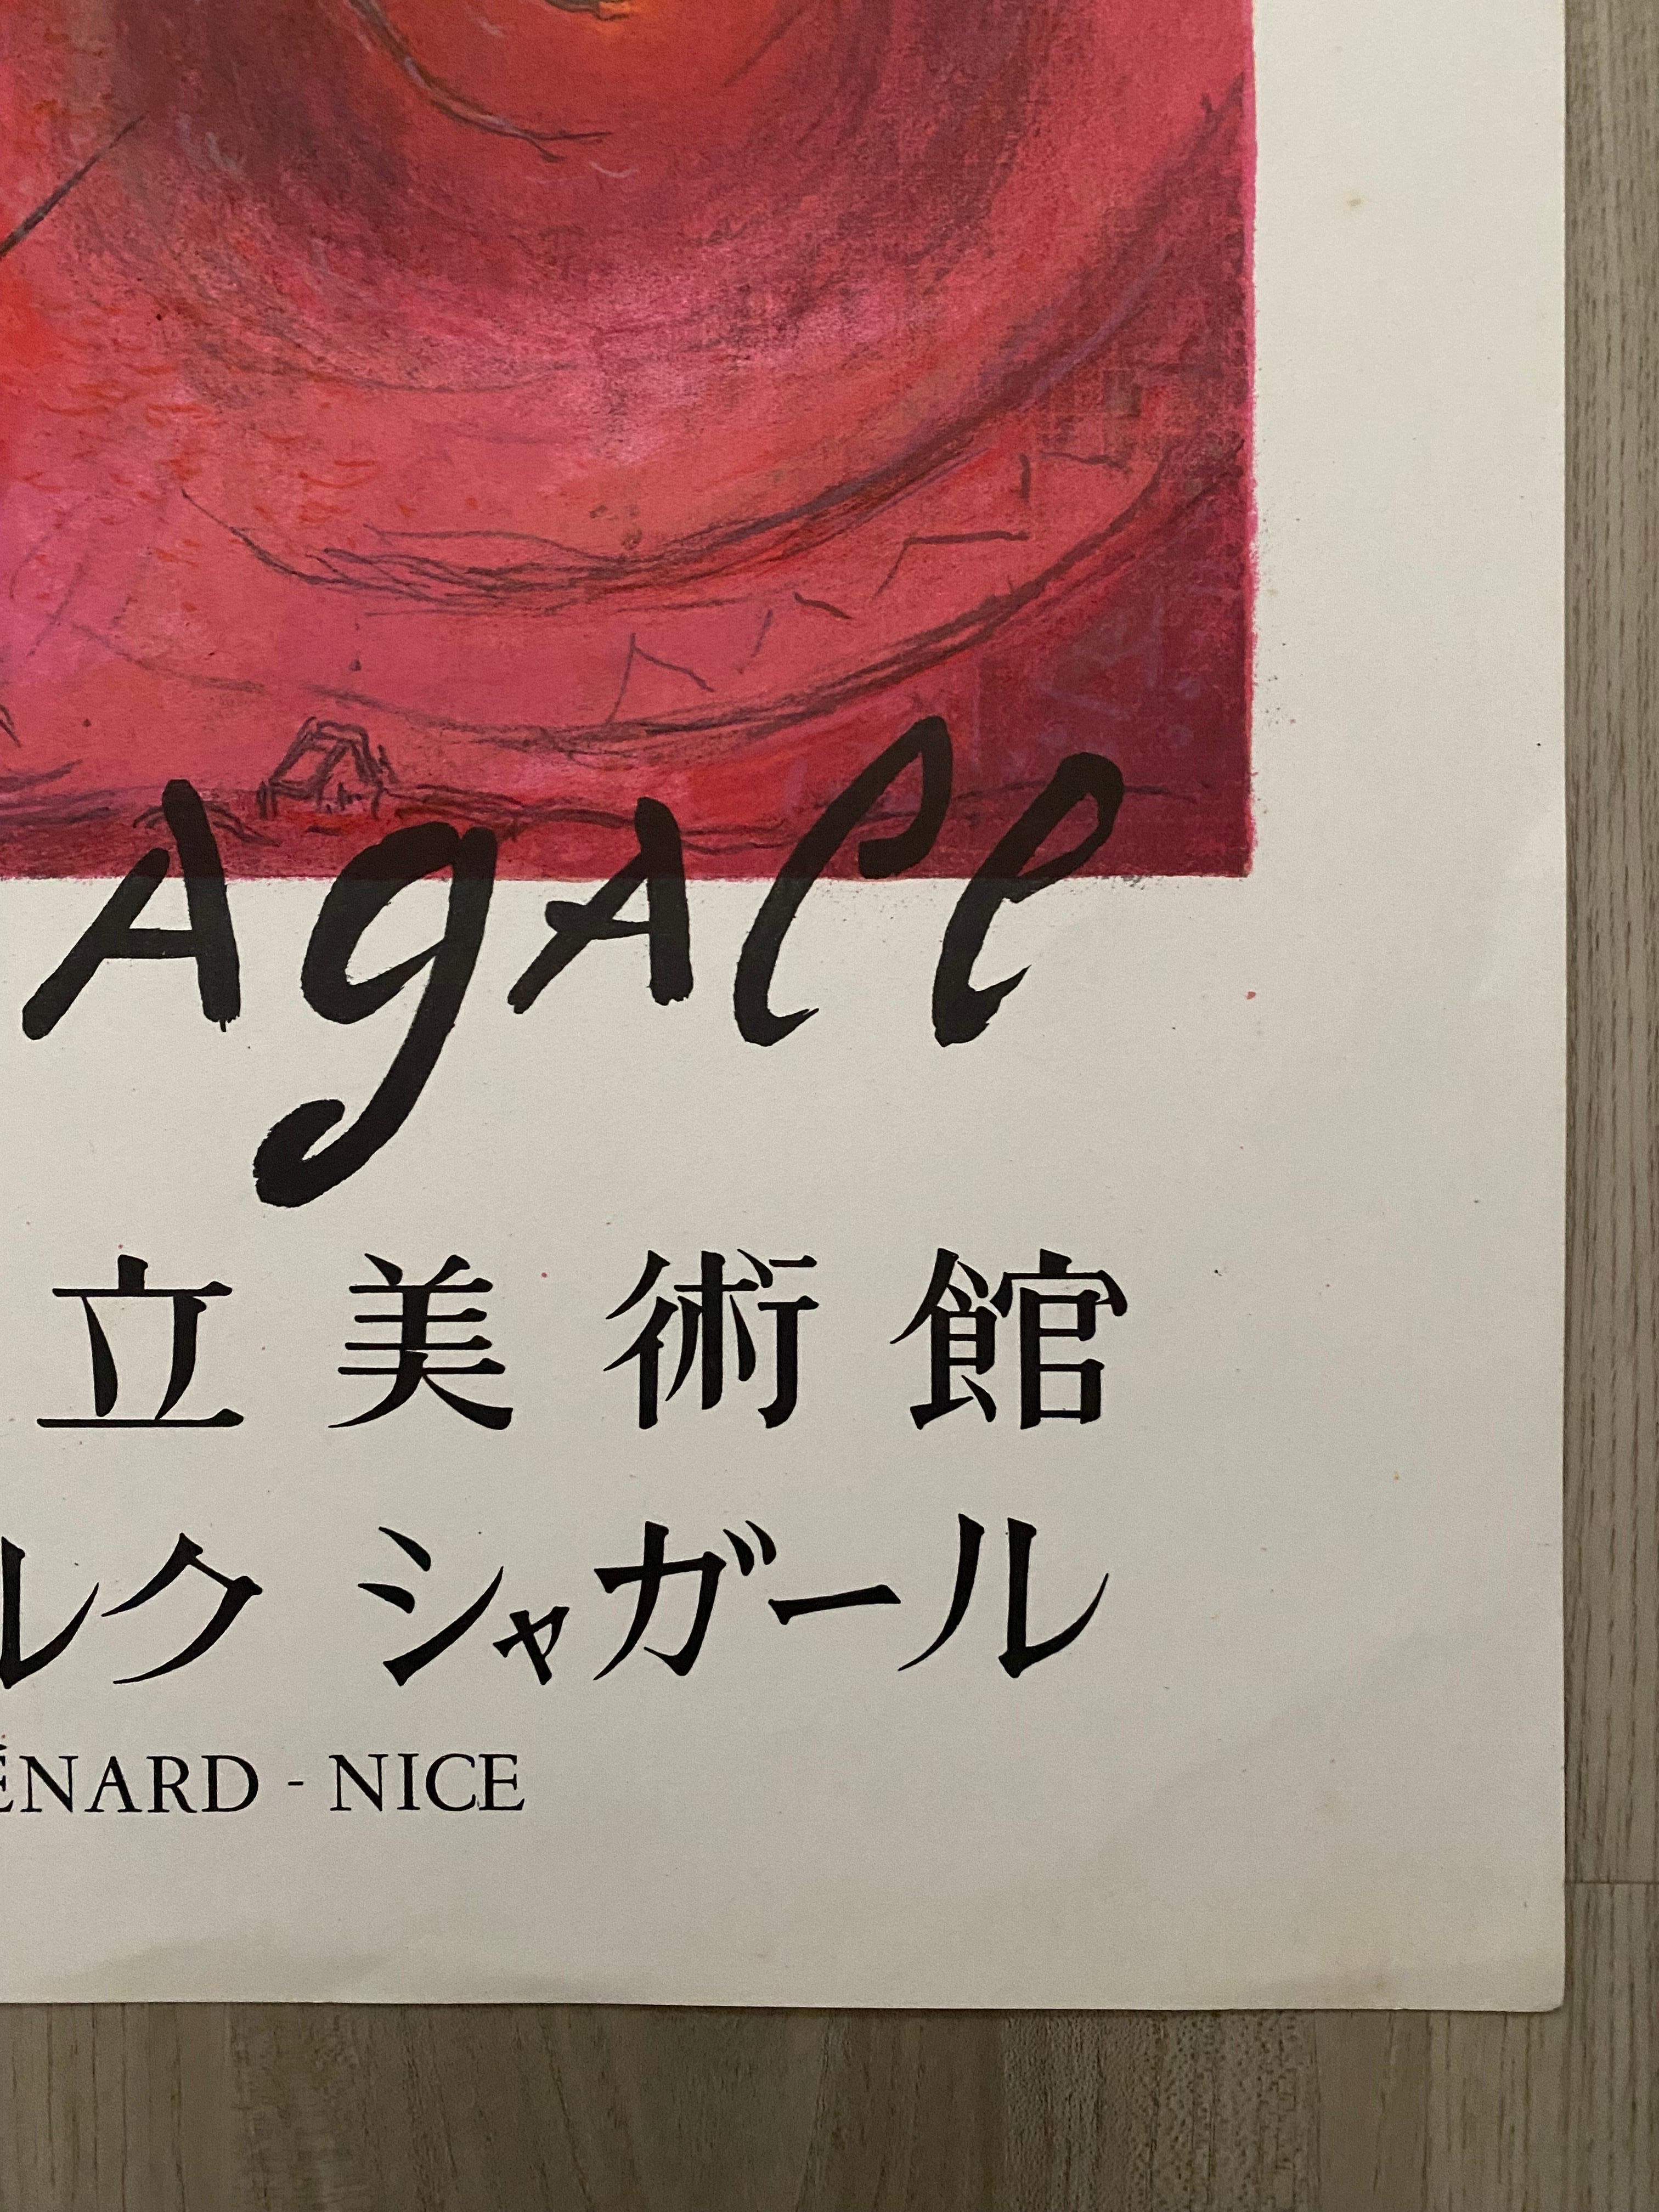 Paper 1975 Le Cantique Des Cantiques After Marc Chagall Advertisment Print By Mourlot